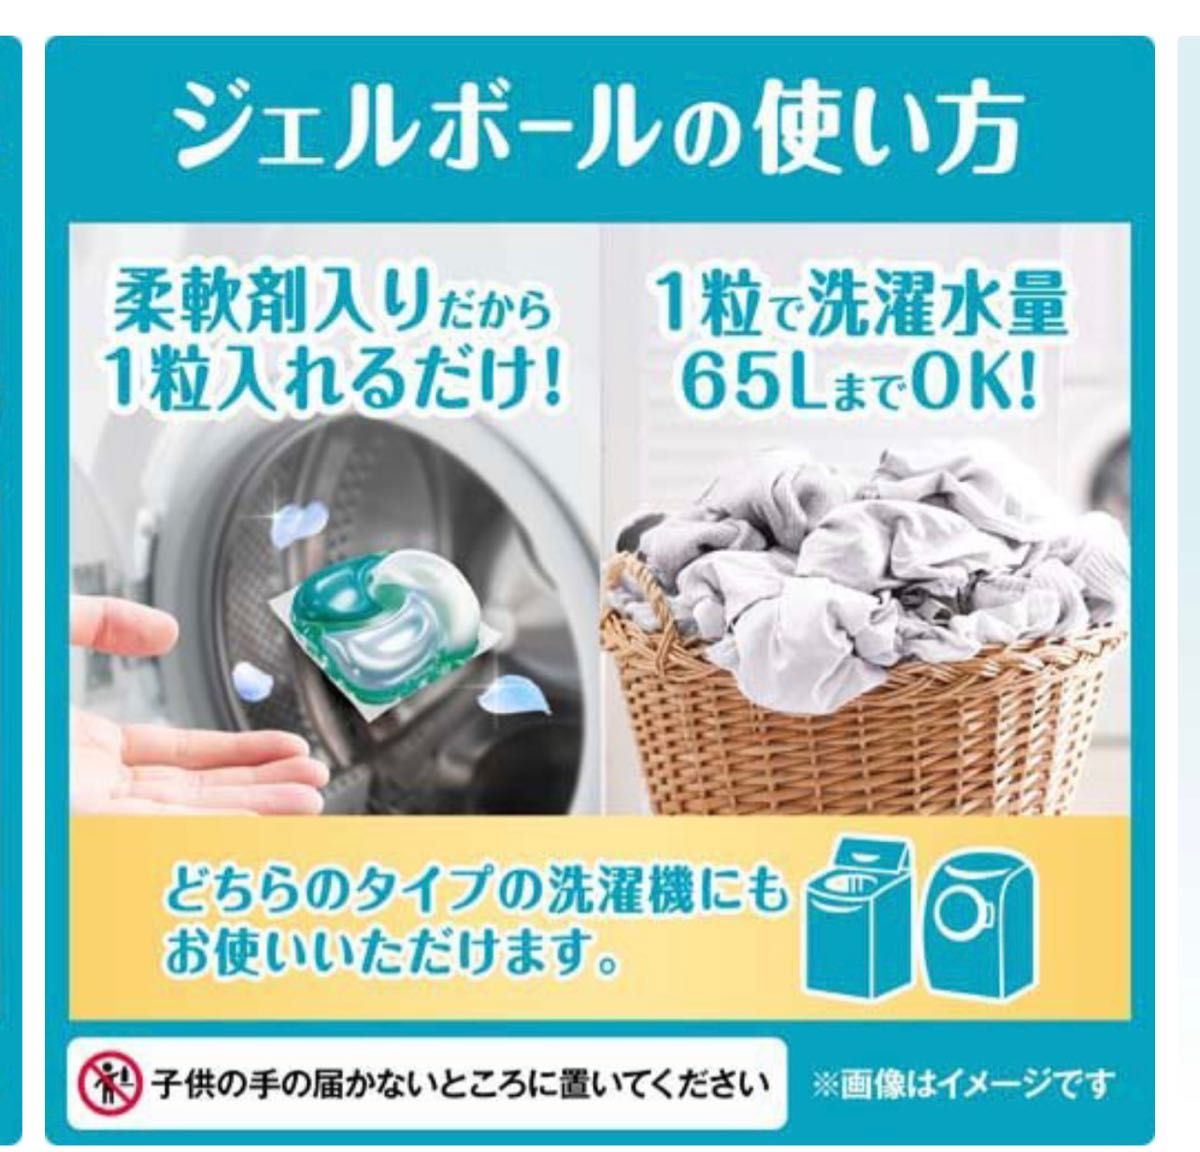 ボールド 洗濯洗剤 ジェルボール4D フレッシュフラワーサボン 詰替 36個×12袋